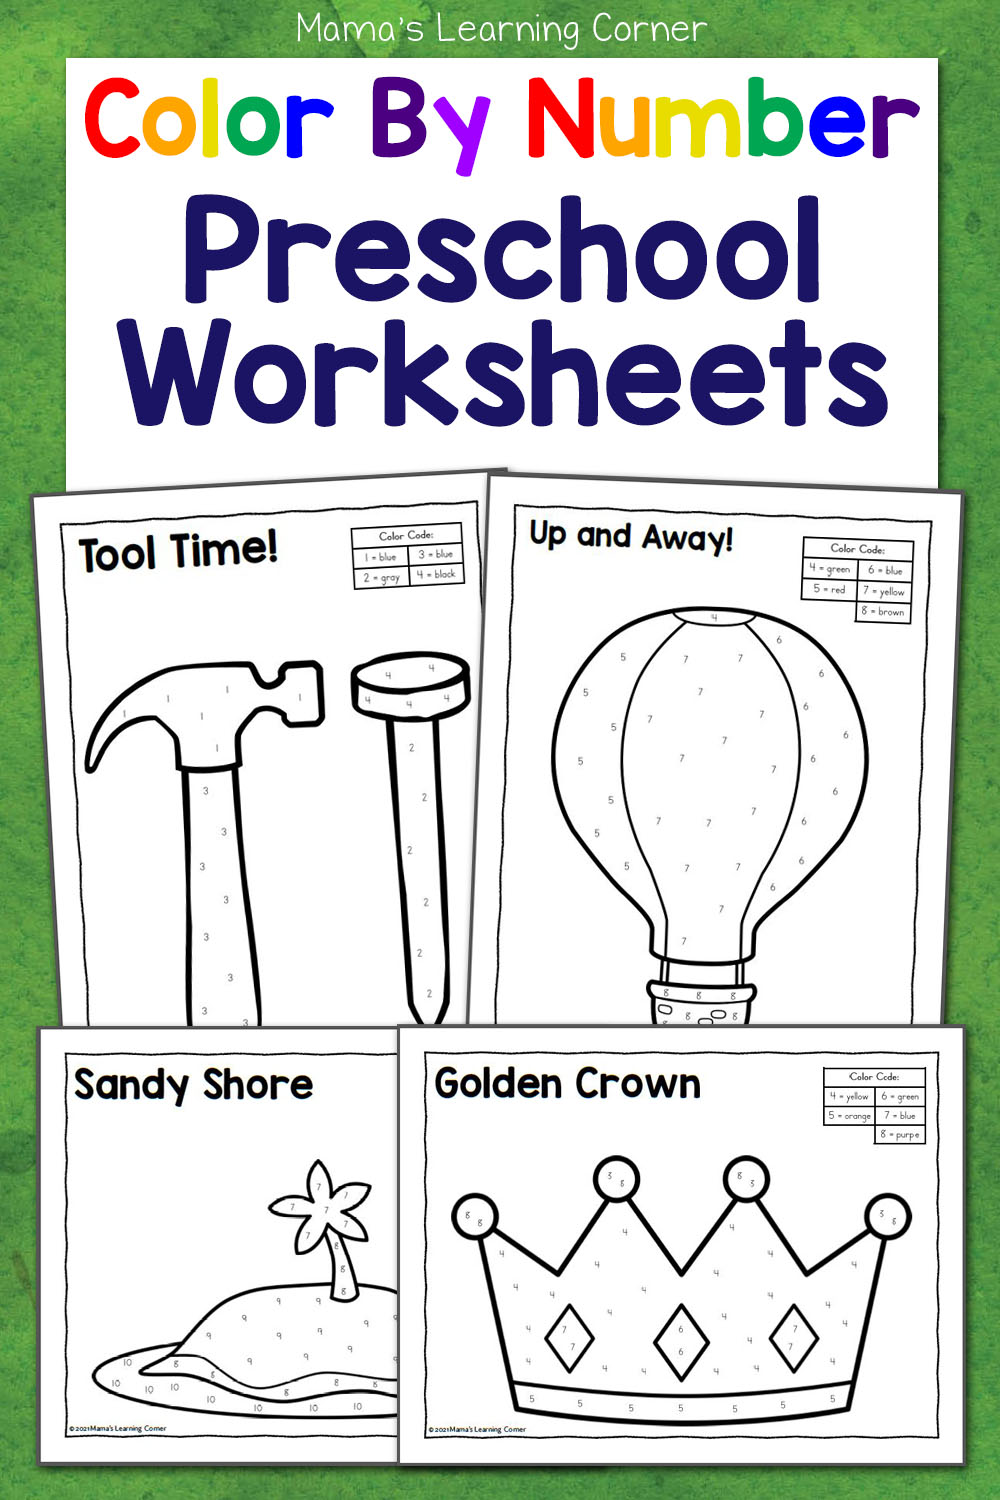 https://www.mamaslearningcorner.com/wp-content/uploads/2013/06/Color-By-Number-Preschool-Worksheets-Revised.jpg